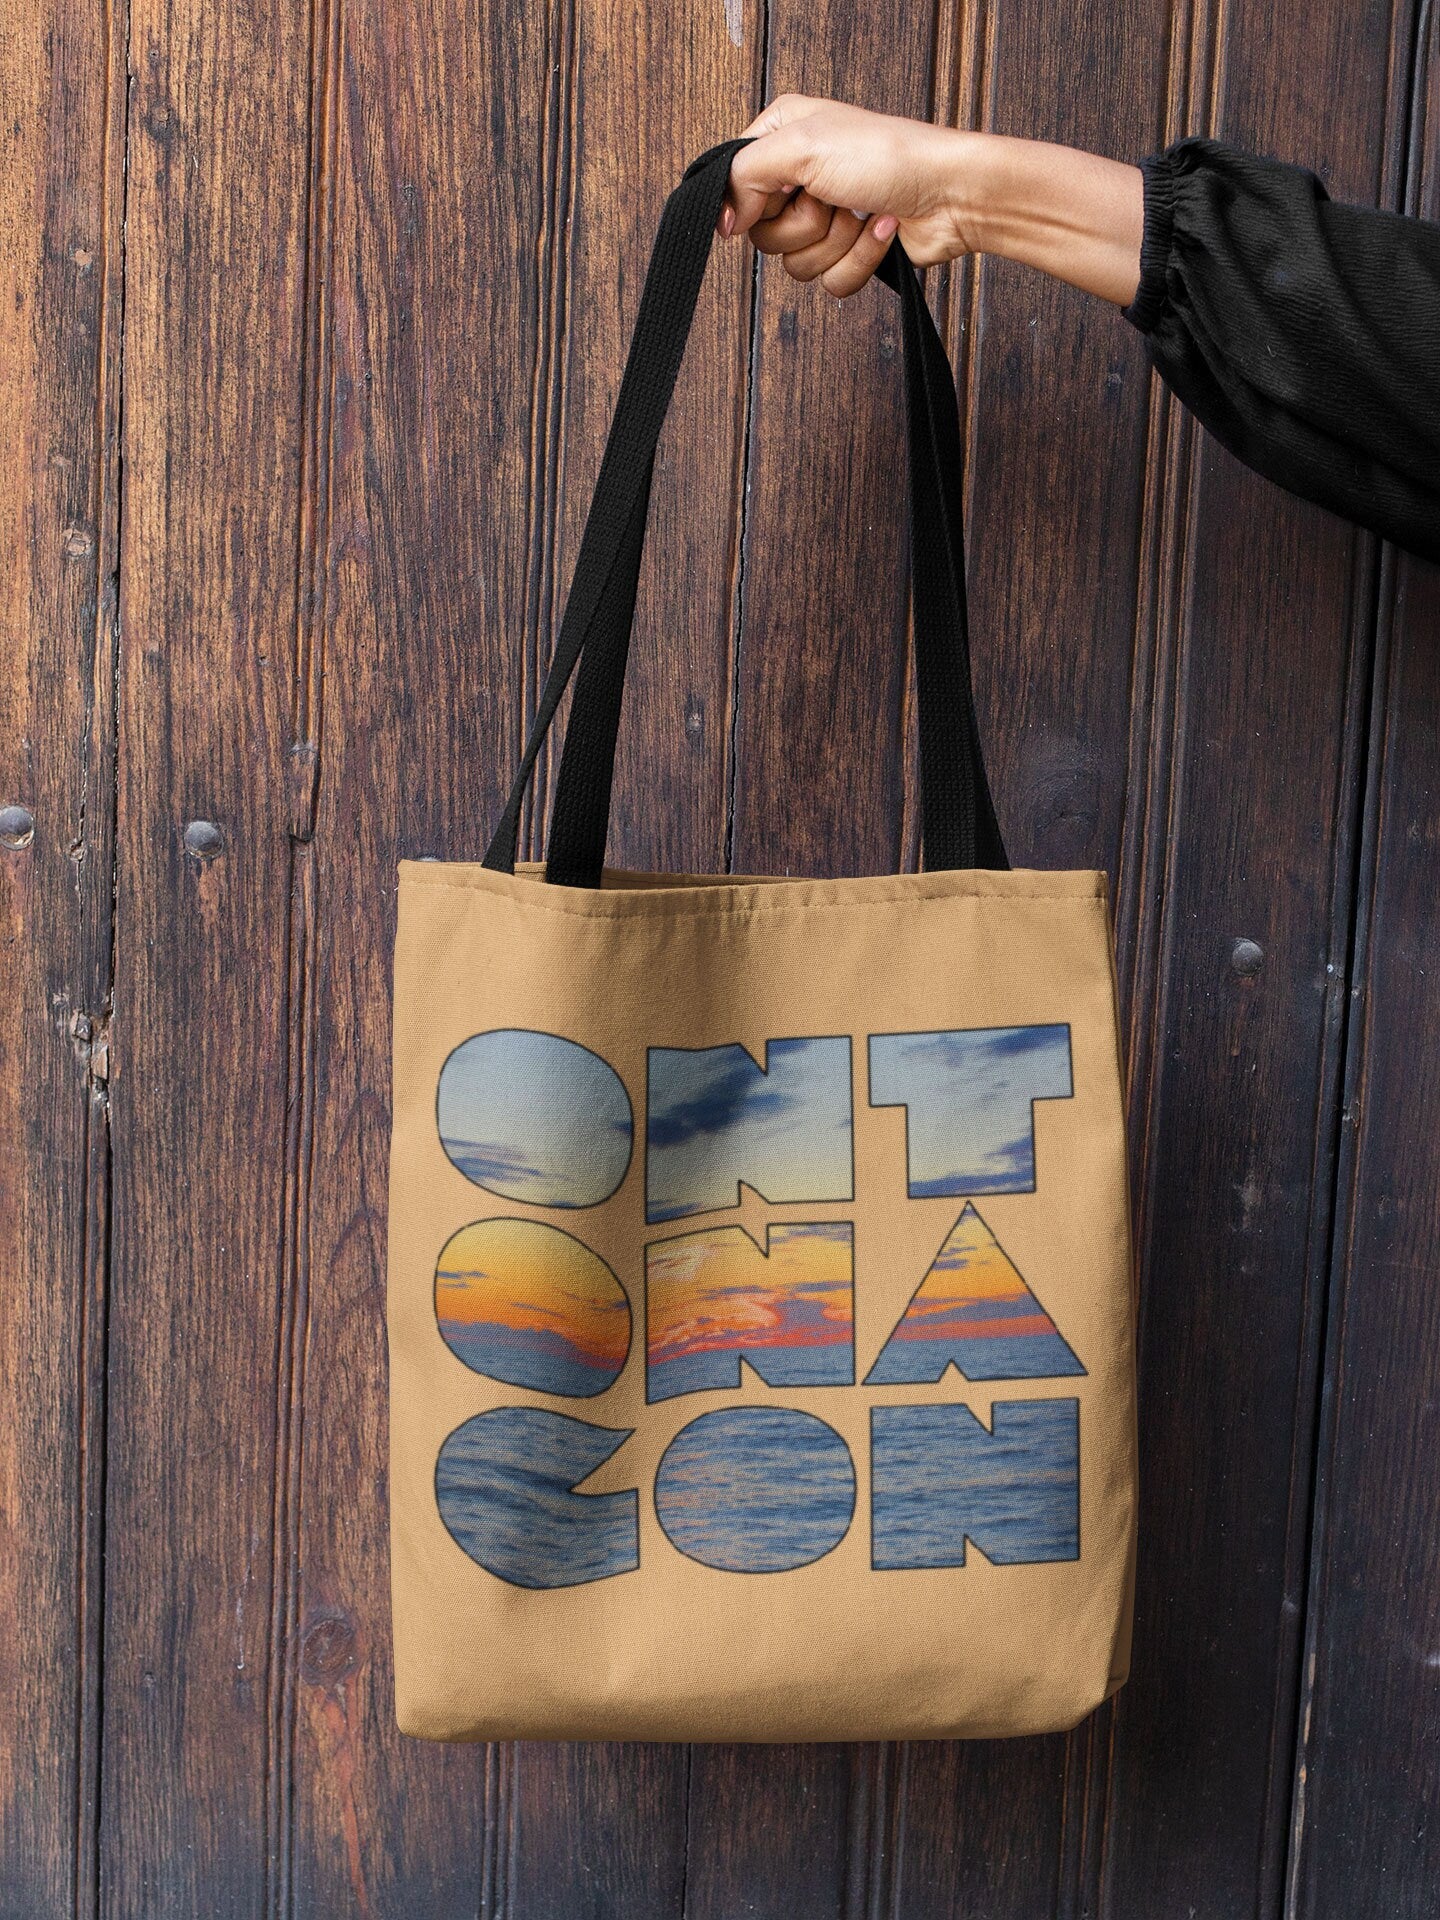 Ontonagon Gift Tote Bag | Upper Michigan Gifts | Yooper Tote/Grocery Bag